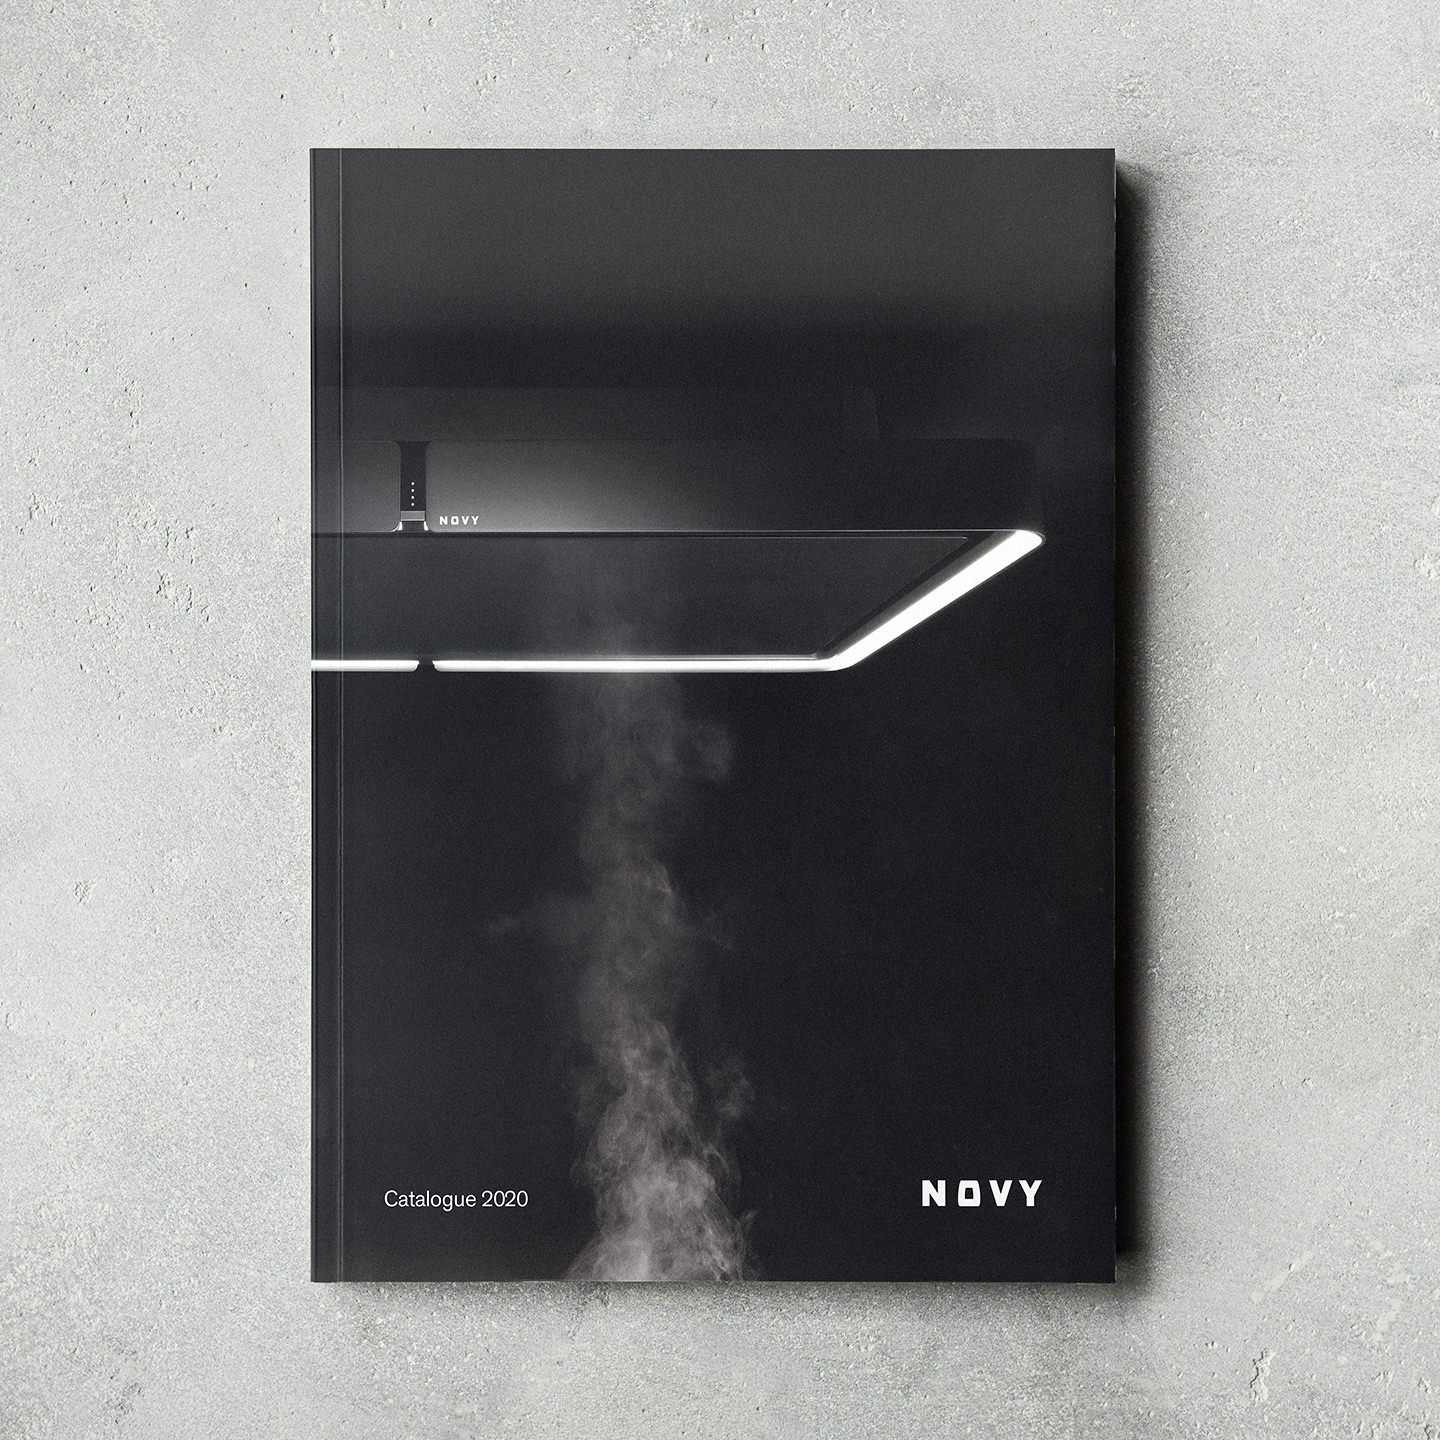 Cover van de nieuwe Novy catalogus, zorgvuldig bedacht en gecreëerd door Focus Advertising